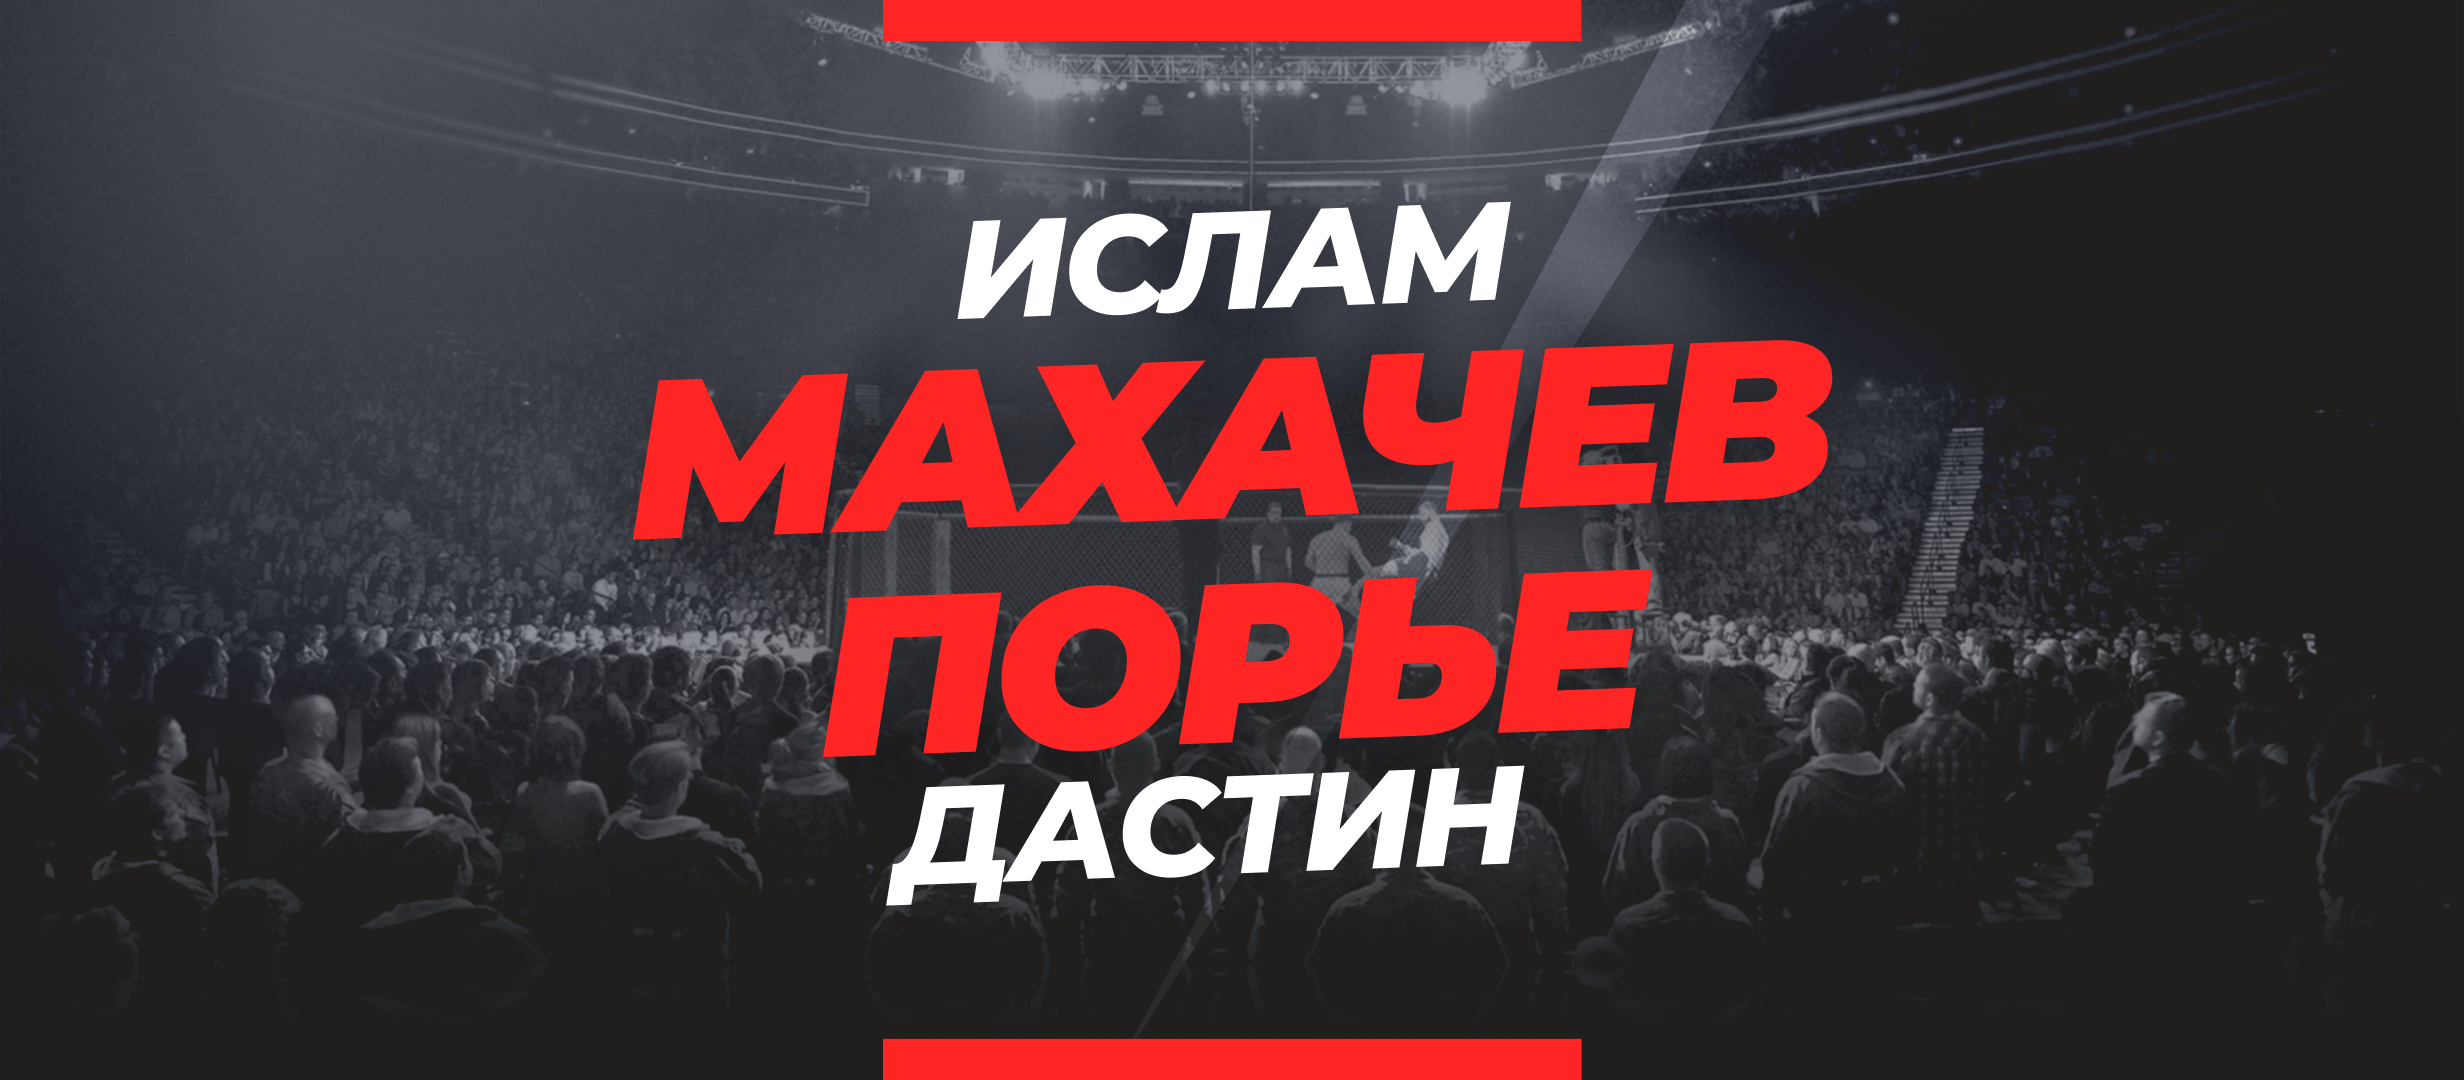 Махачев — Порье: ставки и коэффициенты на чемпионский бой